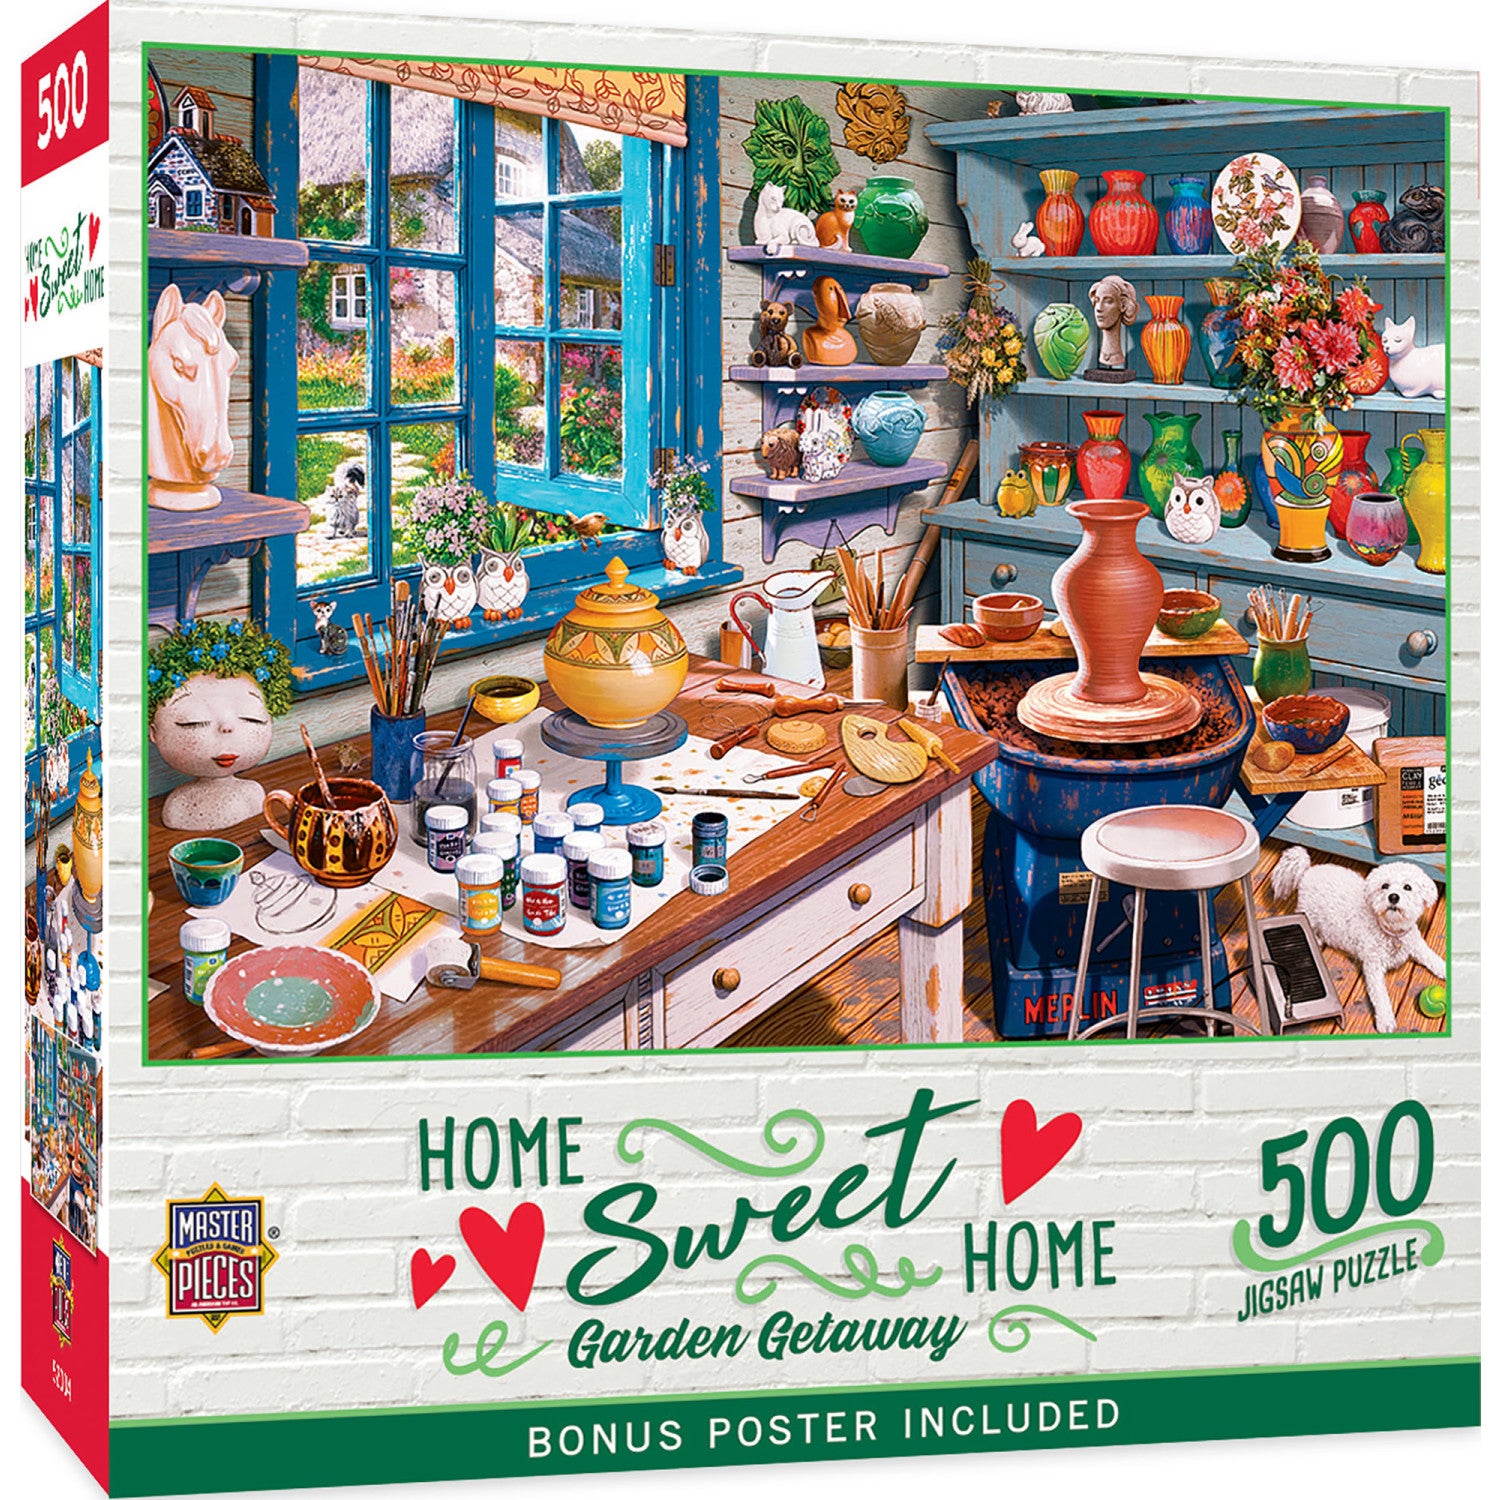 Home Sweet Home - Garden Getaway 500 Piece Jigsaw Puzzle